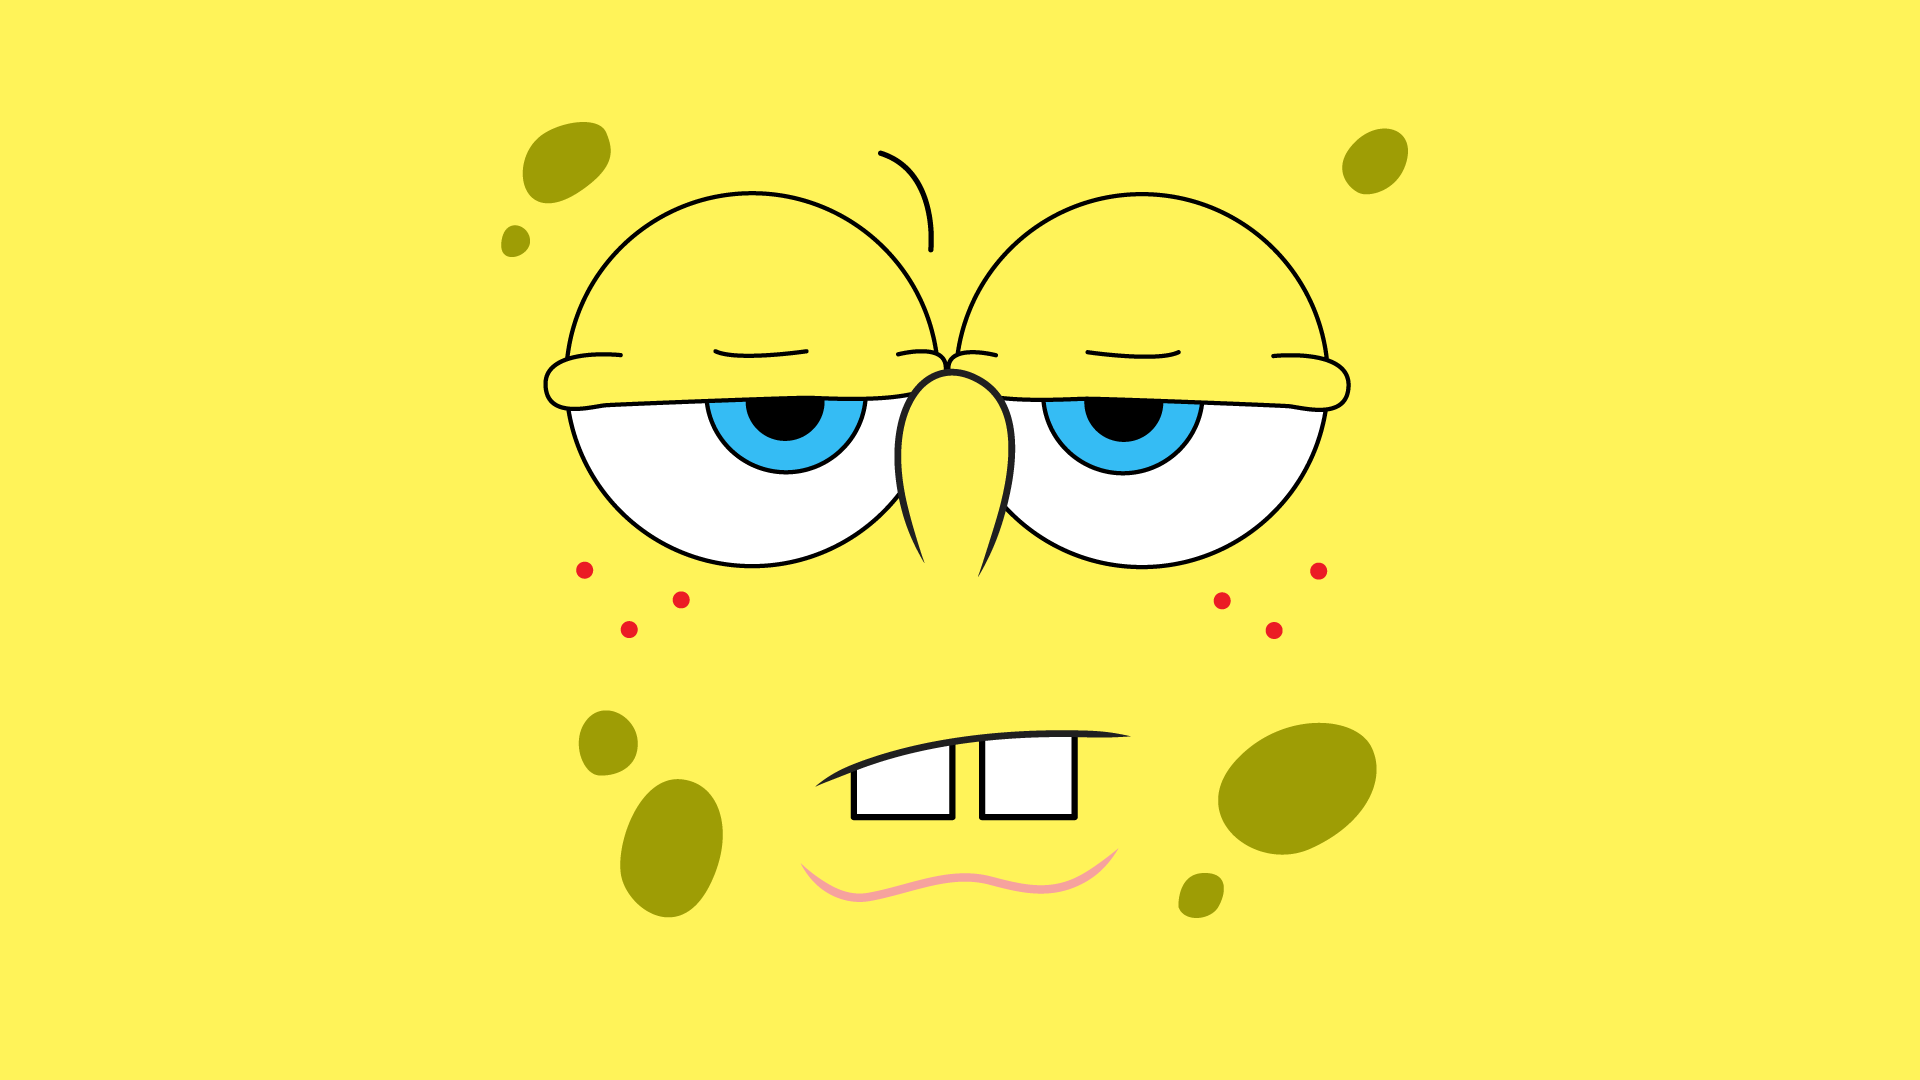 Image for Cute Spongebob Squarepants Wallpaper Desktop. Beta